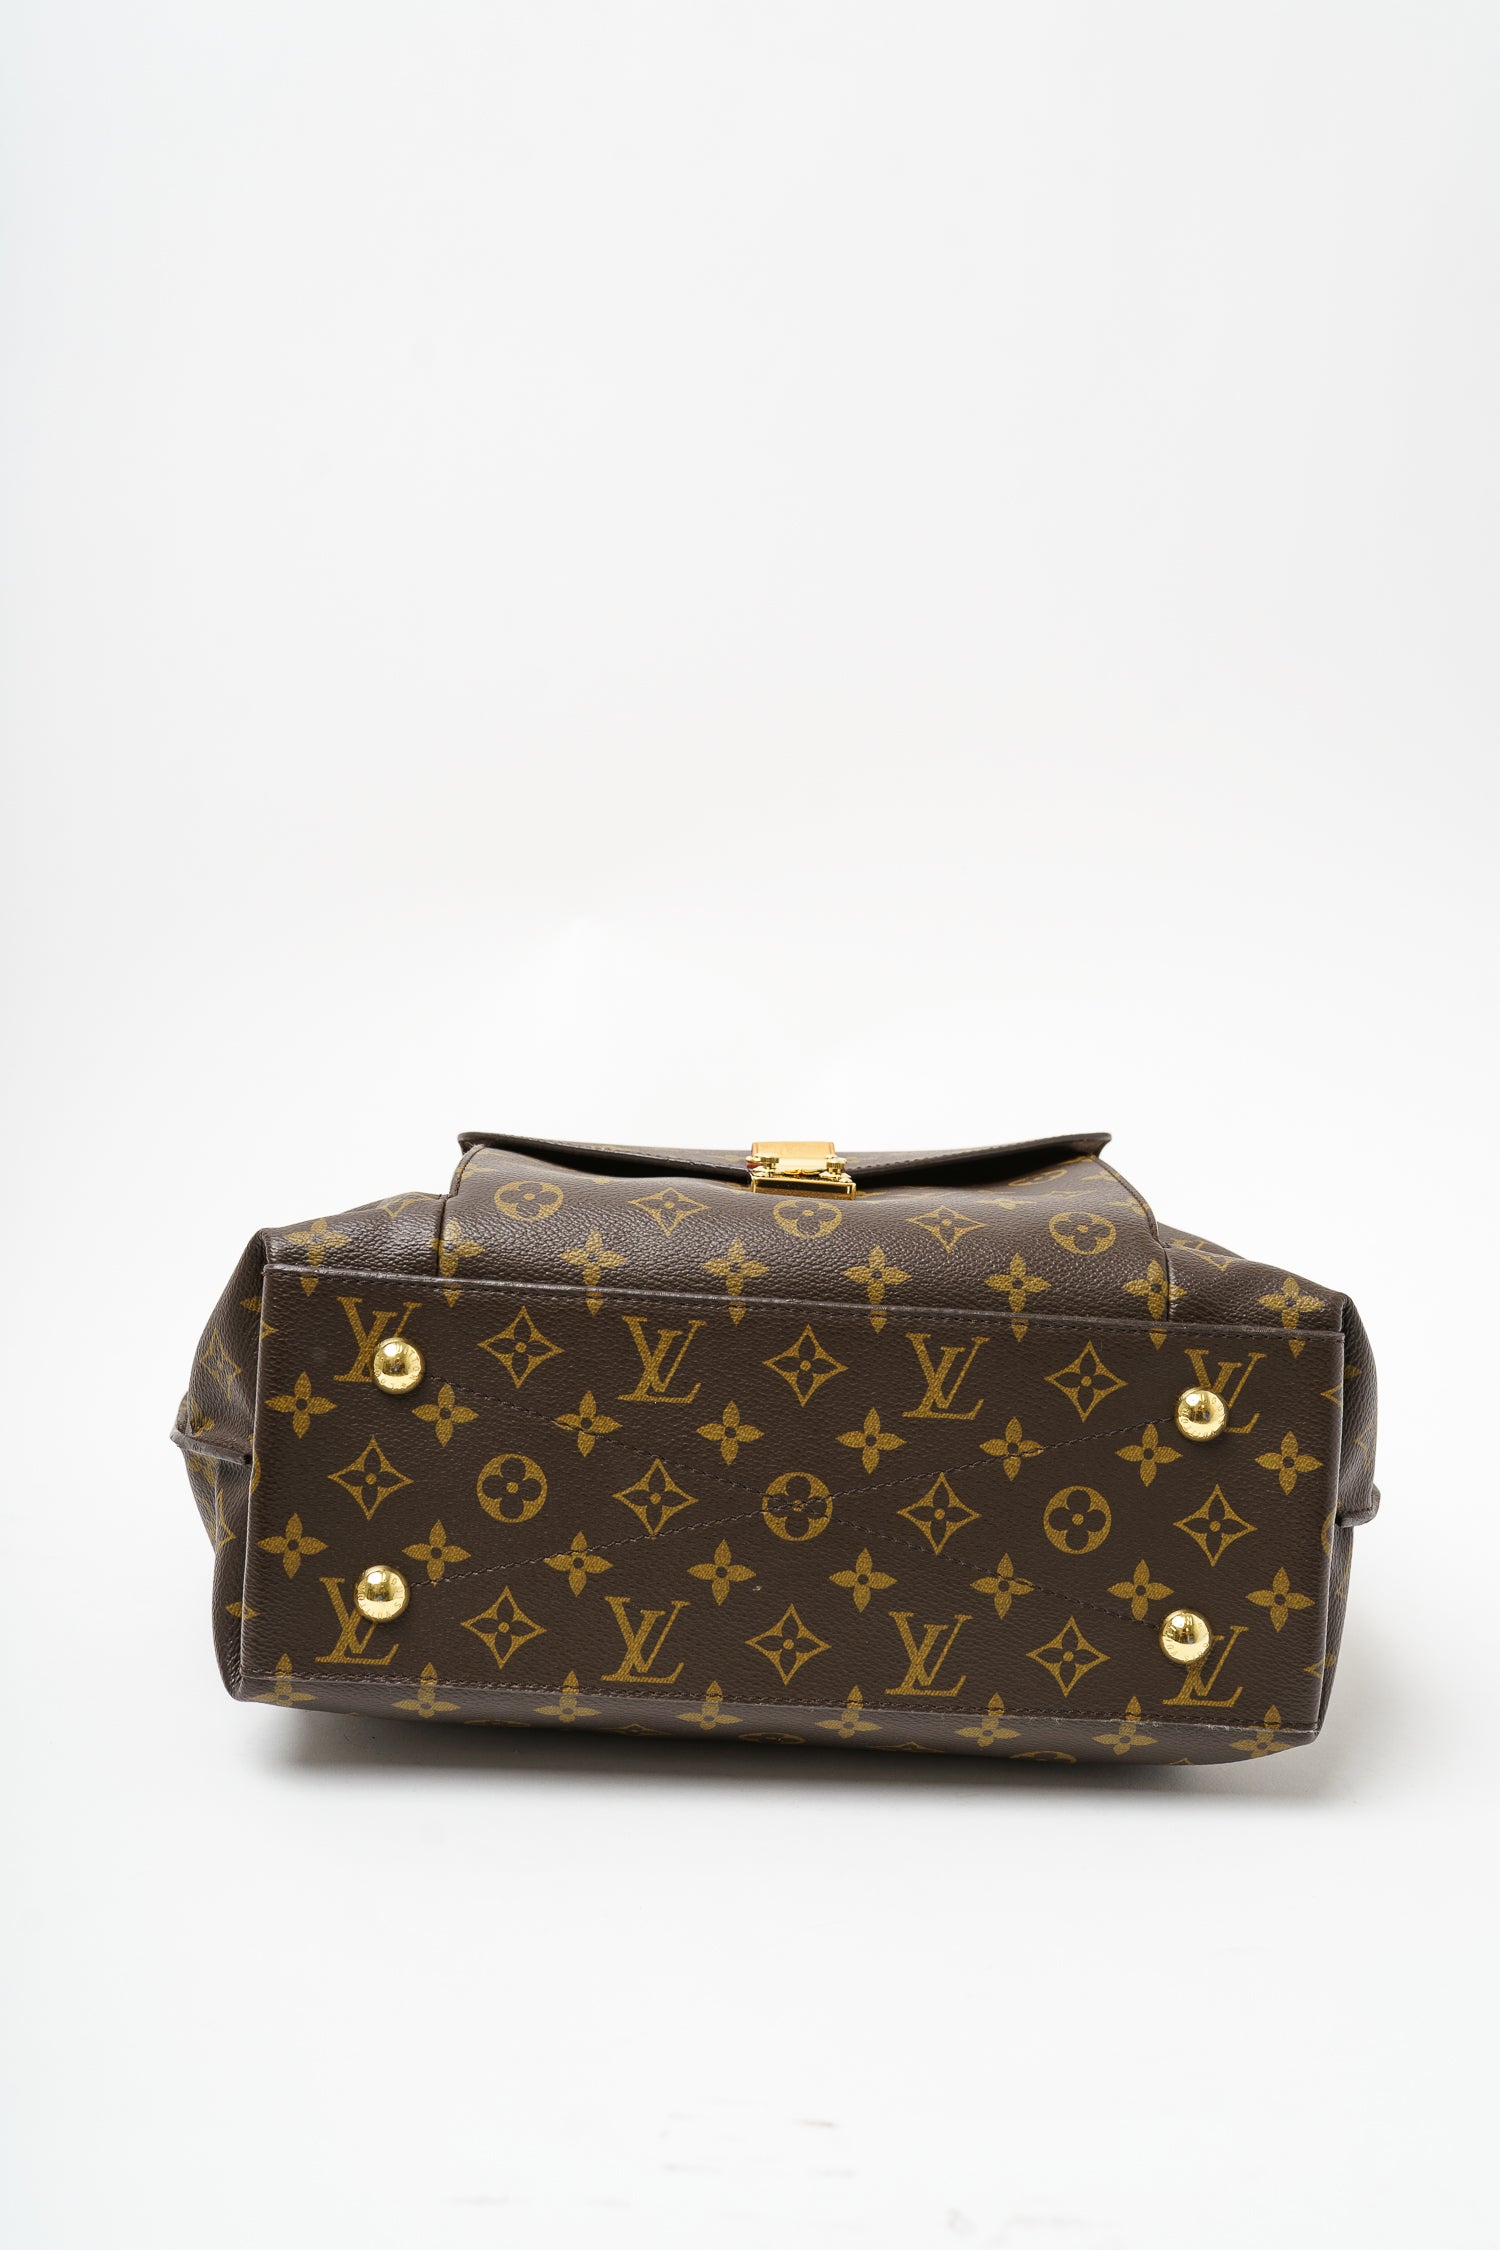 Louis Vuitton Monogram Canvas Metis Hobo Bag - ShopperBoard